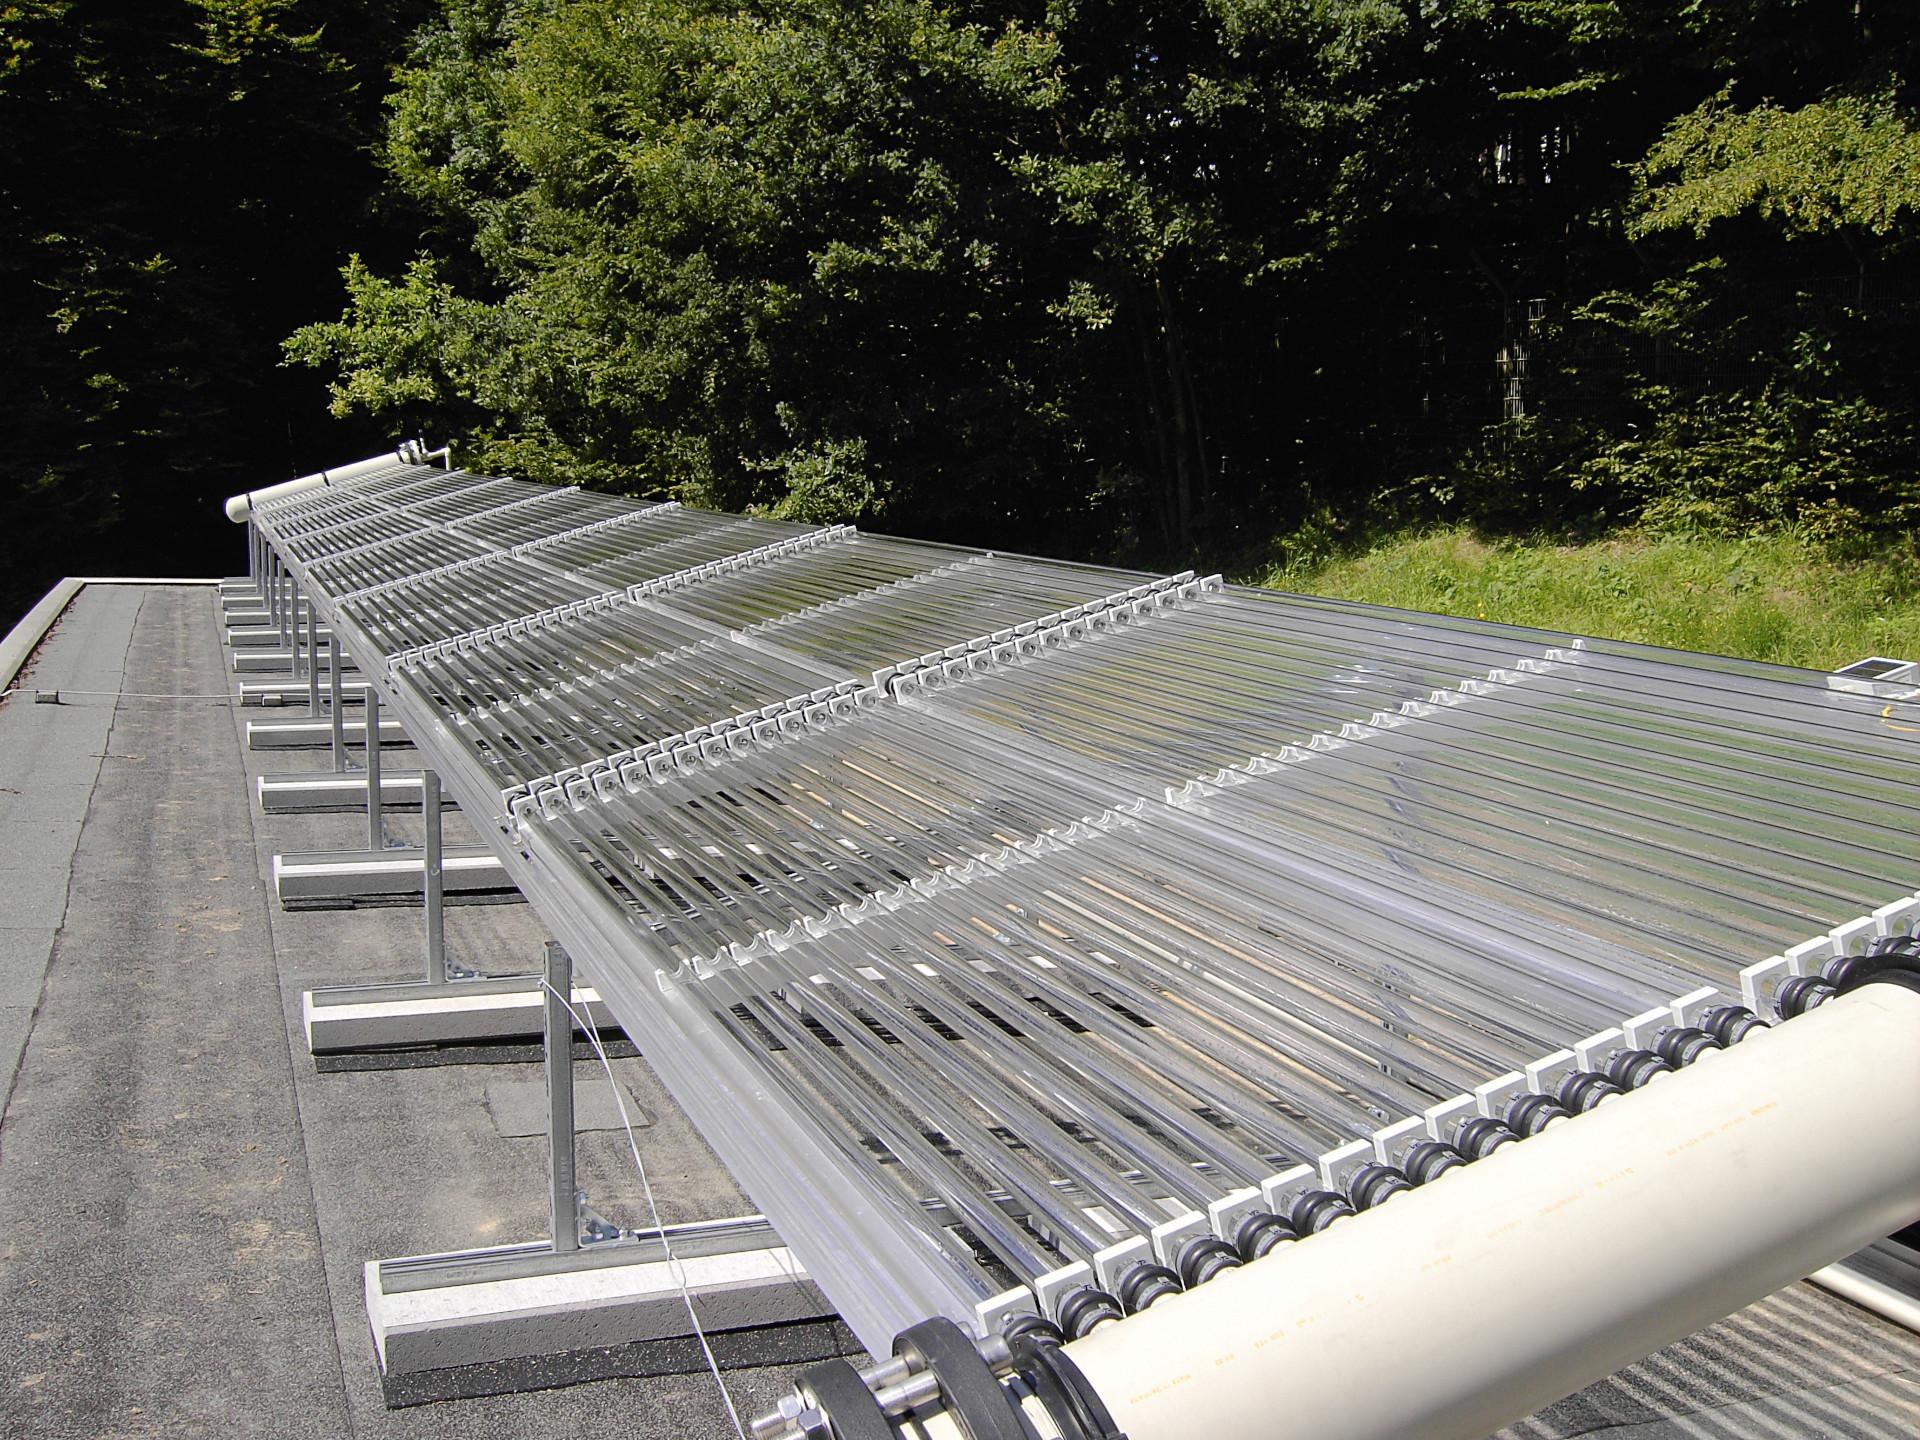 Solar betriebene Wasserreinigunsanlage Lampoldshausen (SOWARLA)